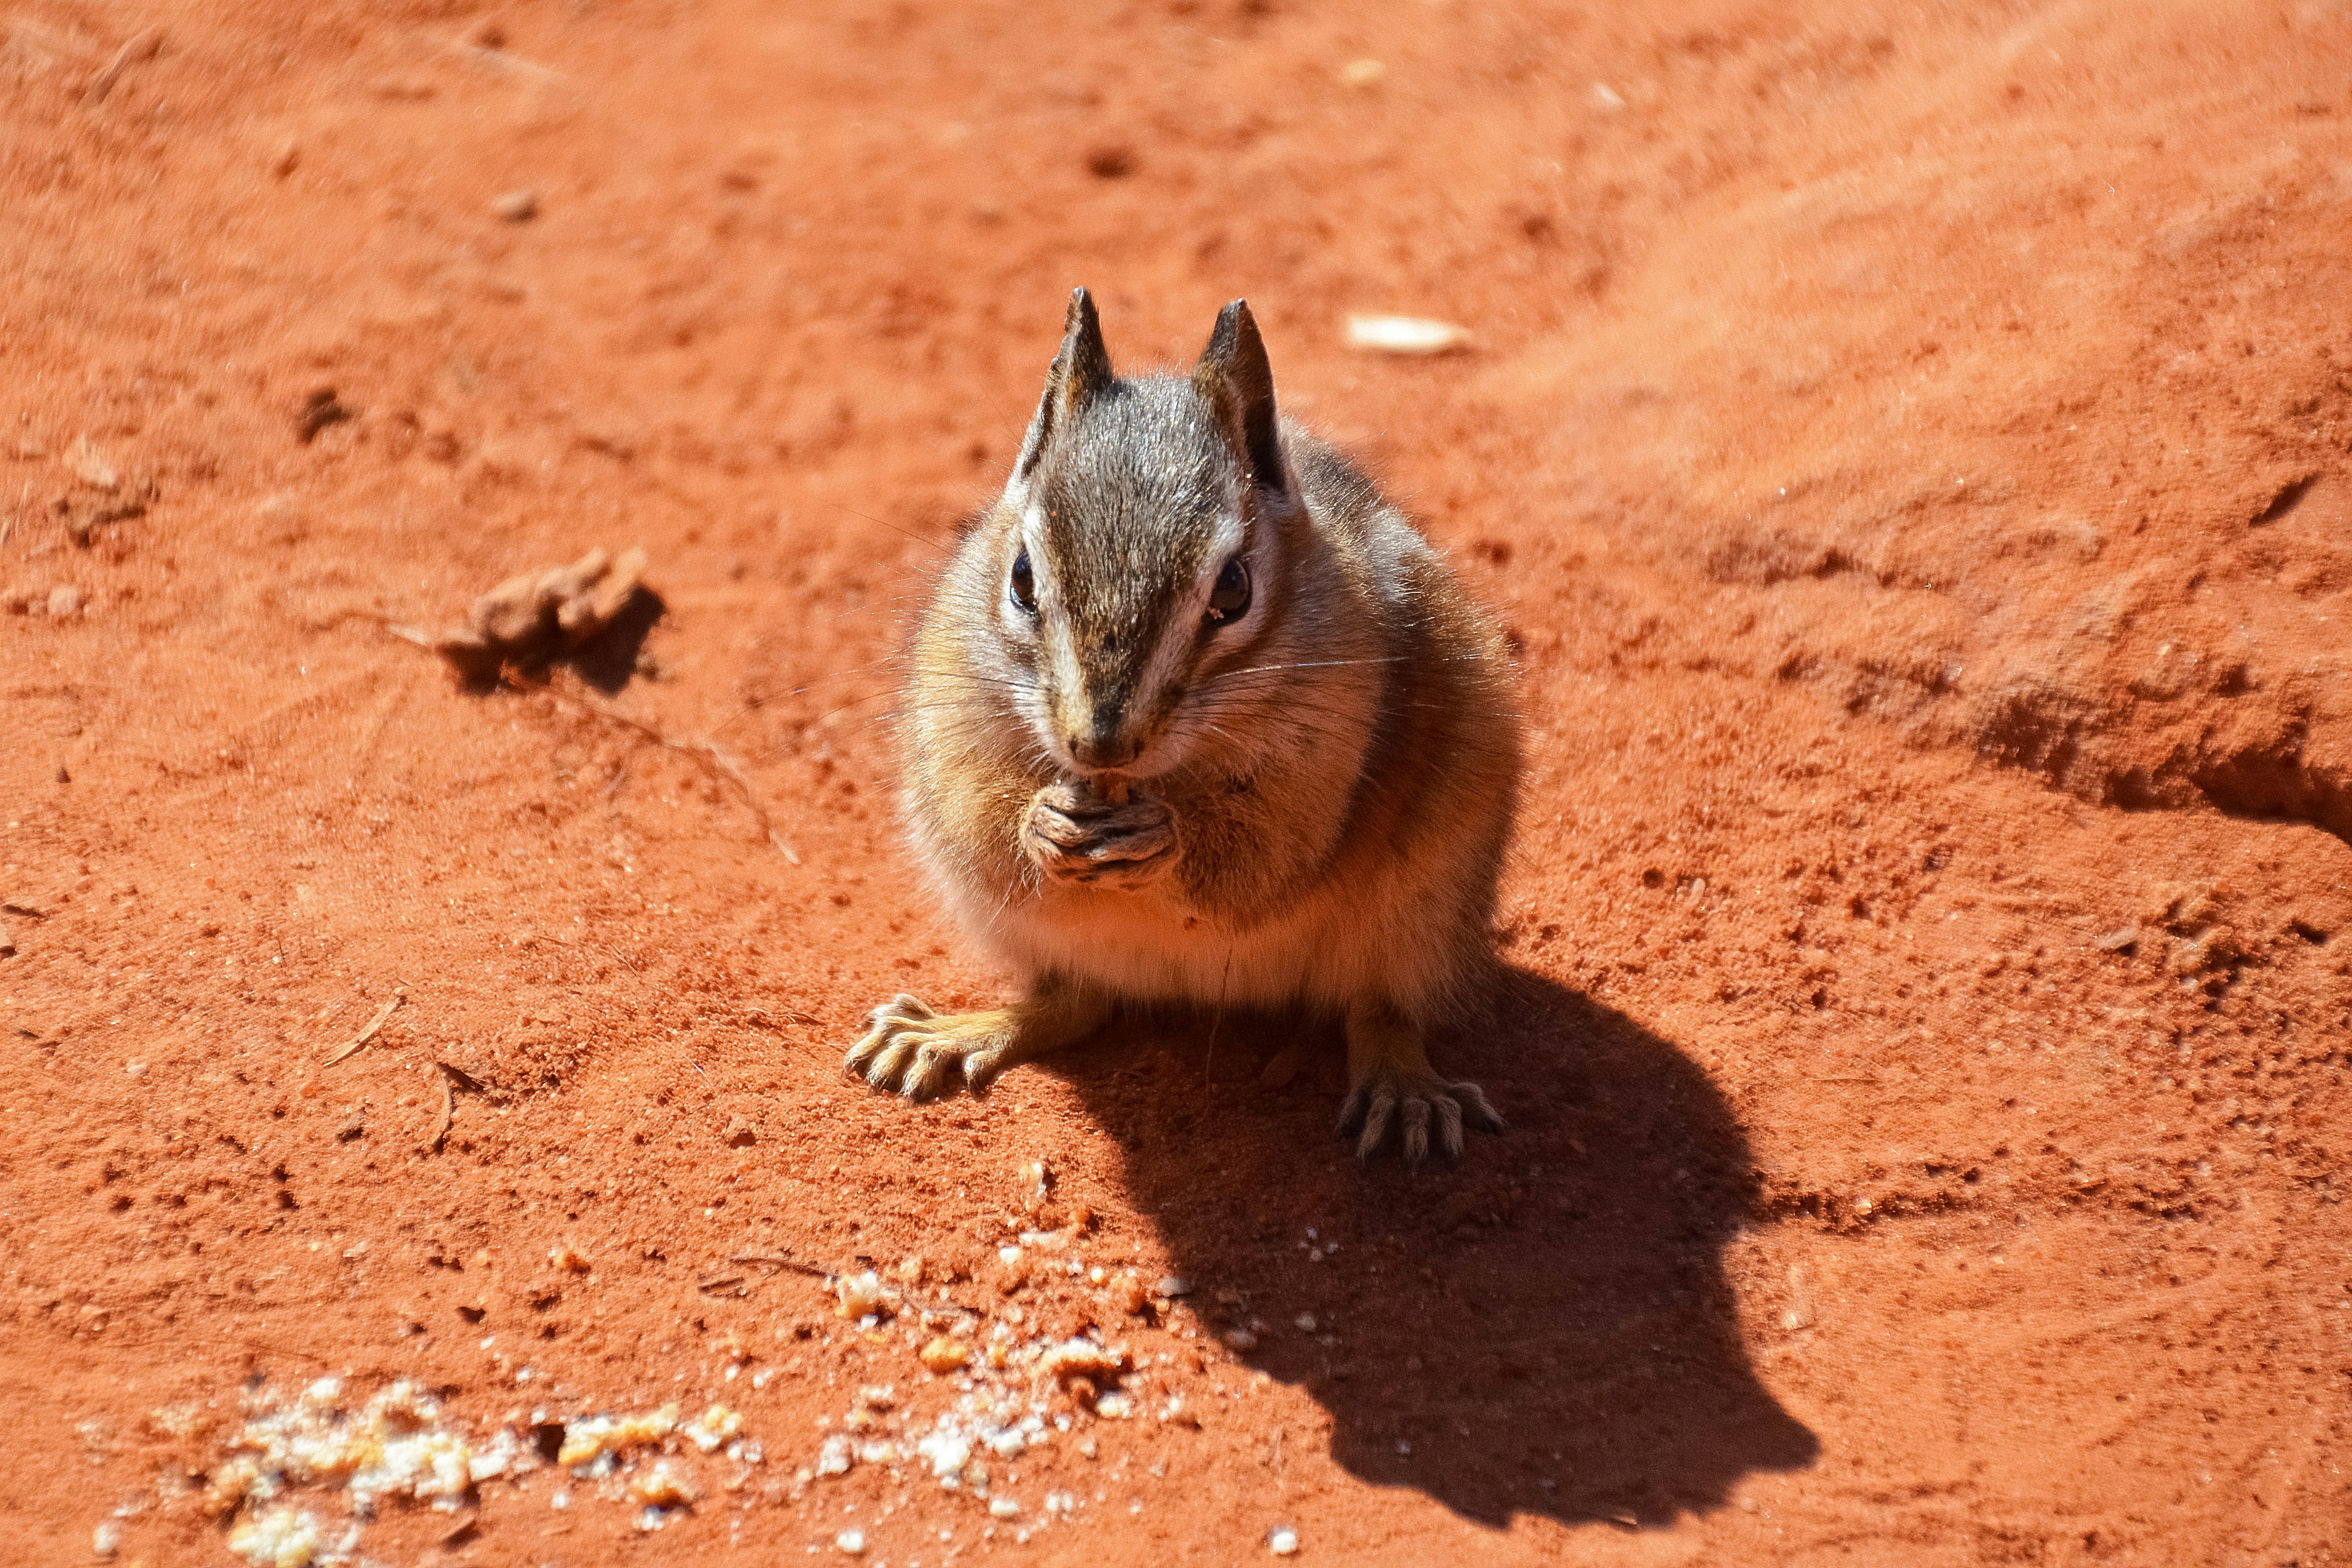 brown squirrel on brown soil during daytime